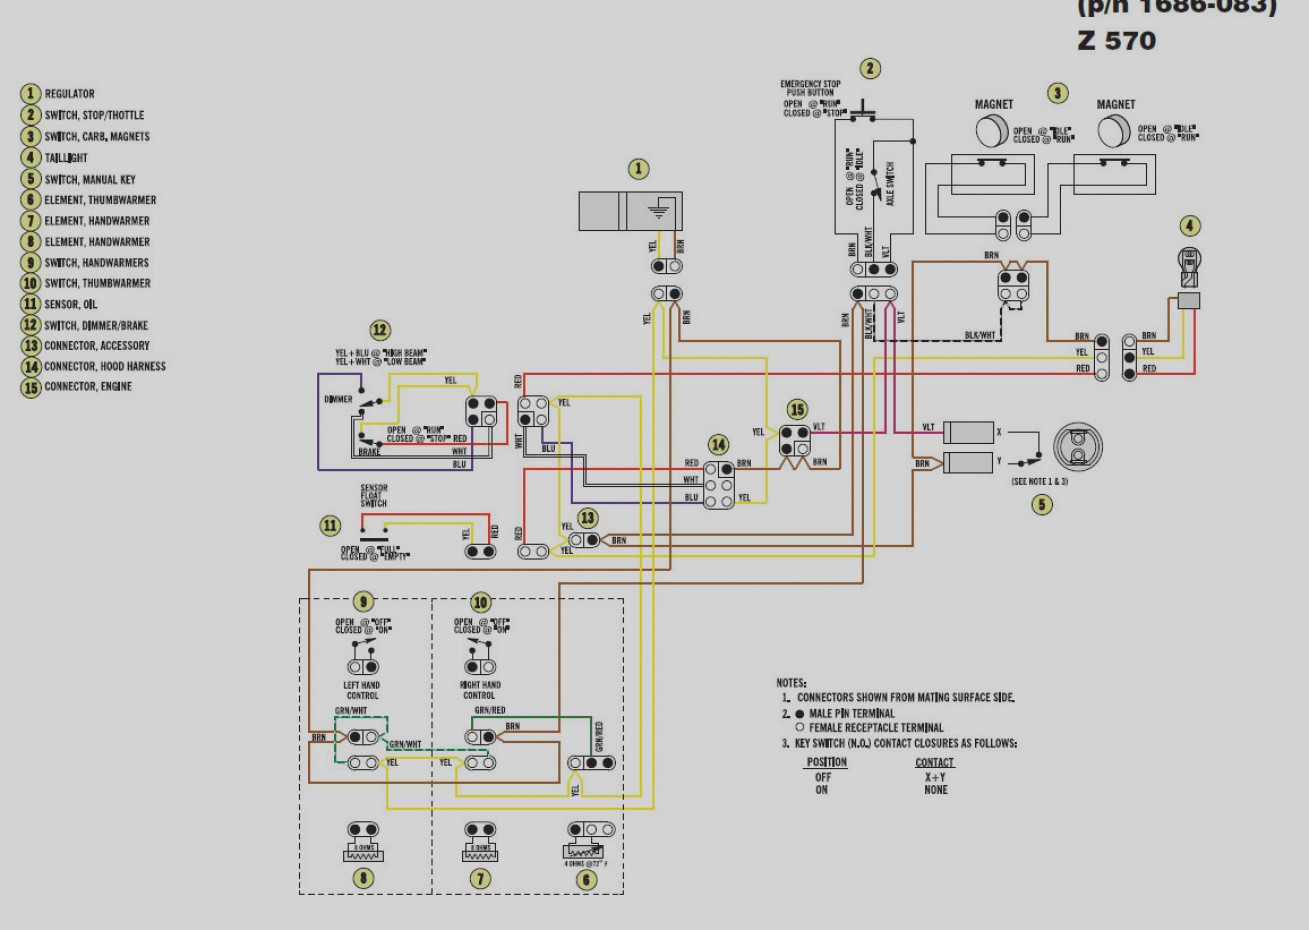 Arctic Cat Z 440 Wiring Diagram